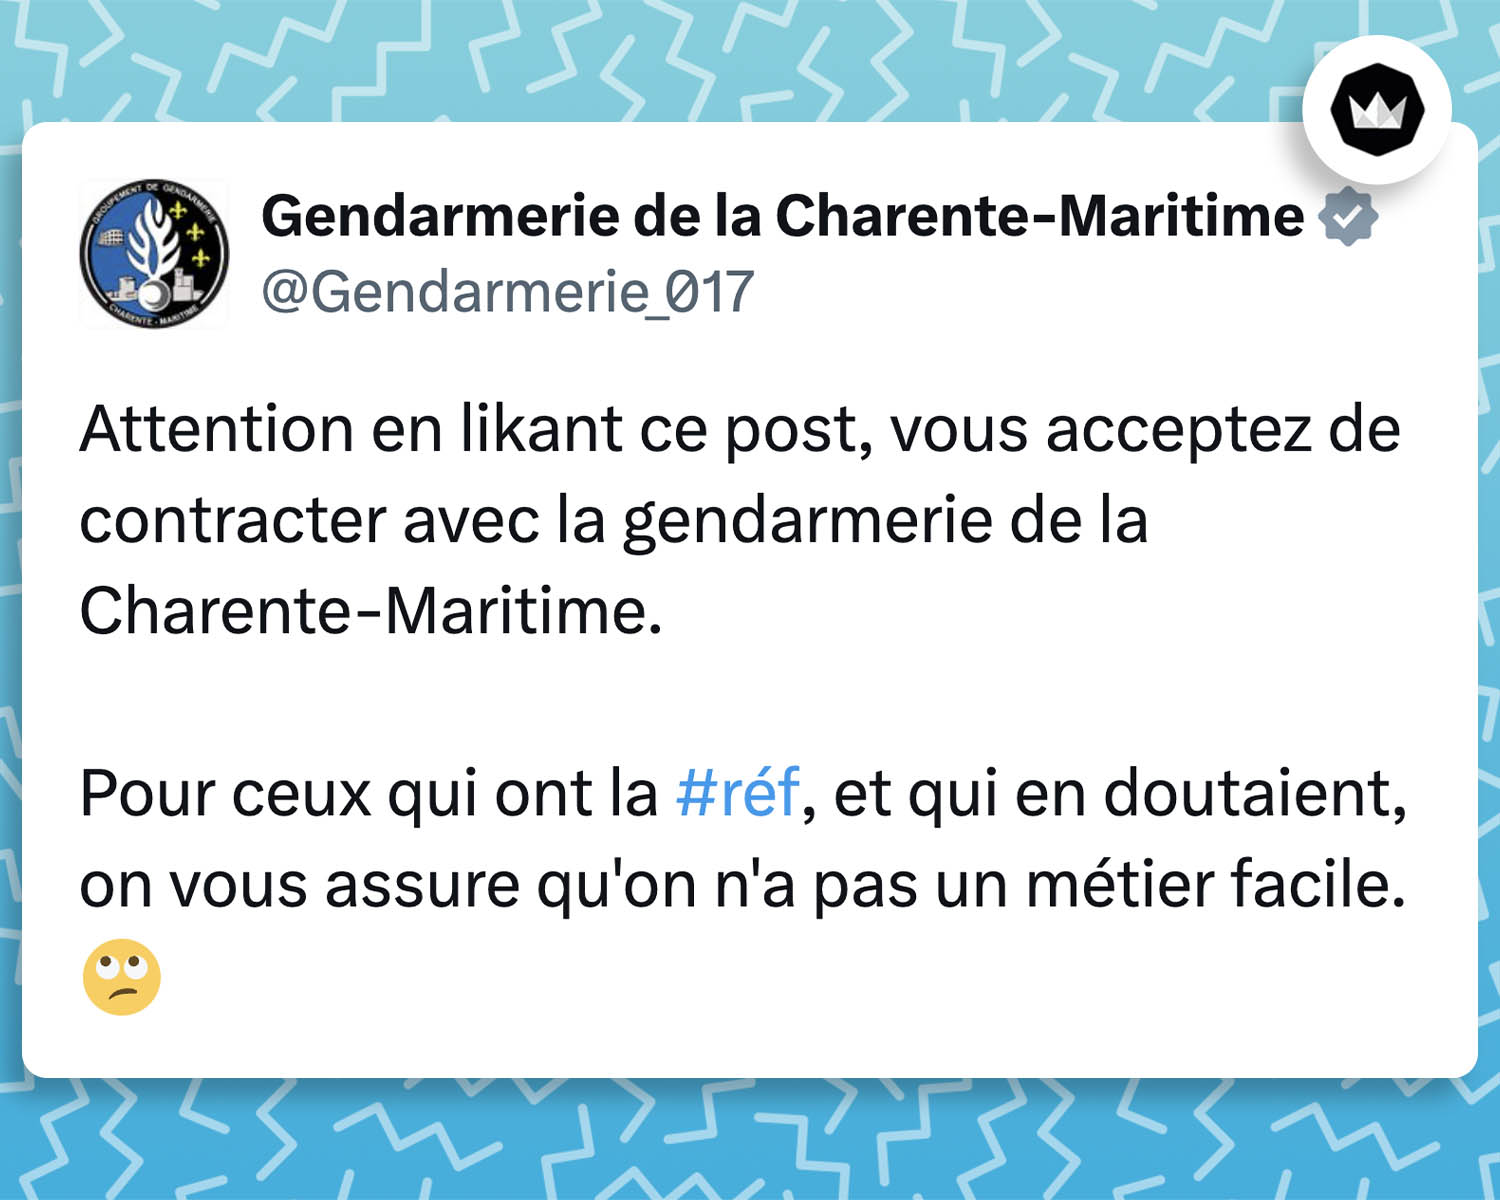 Tweet de @Gendarmerie_017
Attention en likant ce post, vous acceptez de contracter avec la gendarmerie de la Charente-Maritime.

Pour ceux qui ont la #réf, et qui en doutaient, on vous assure qu'on n'a pas un métier facile. 🙄